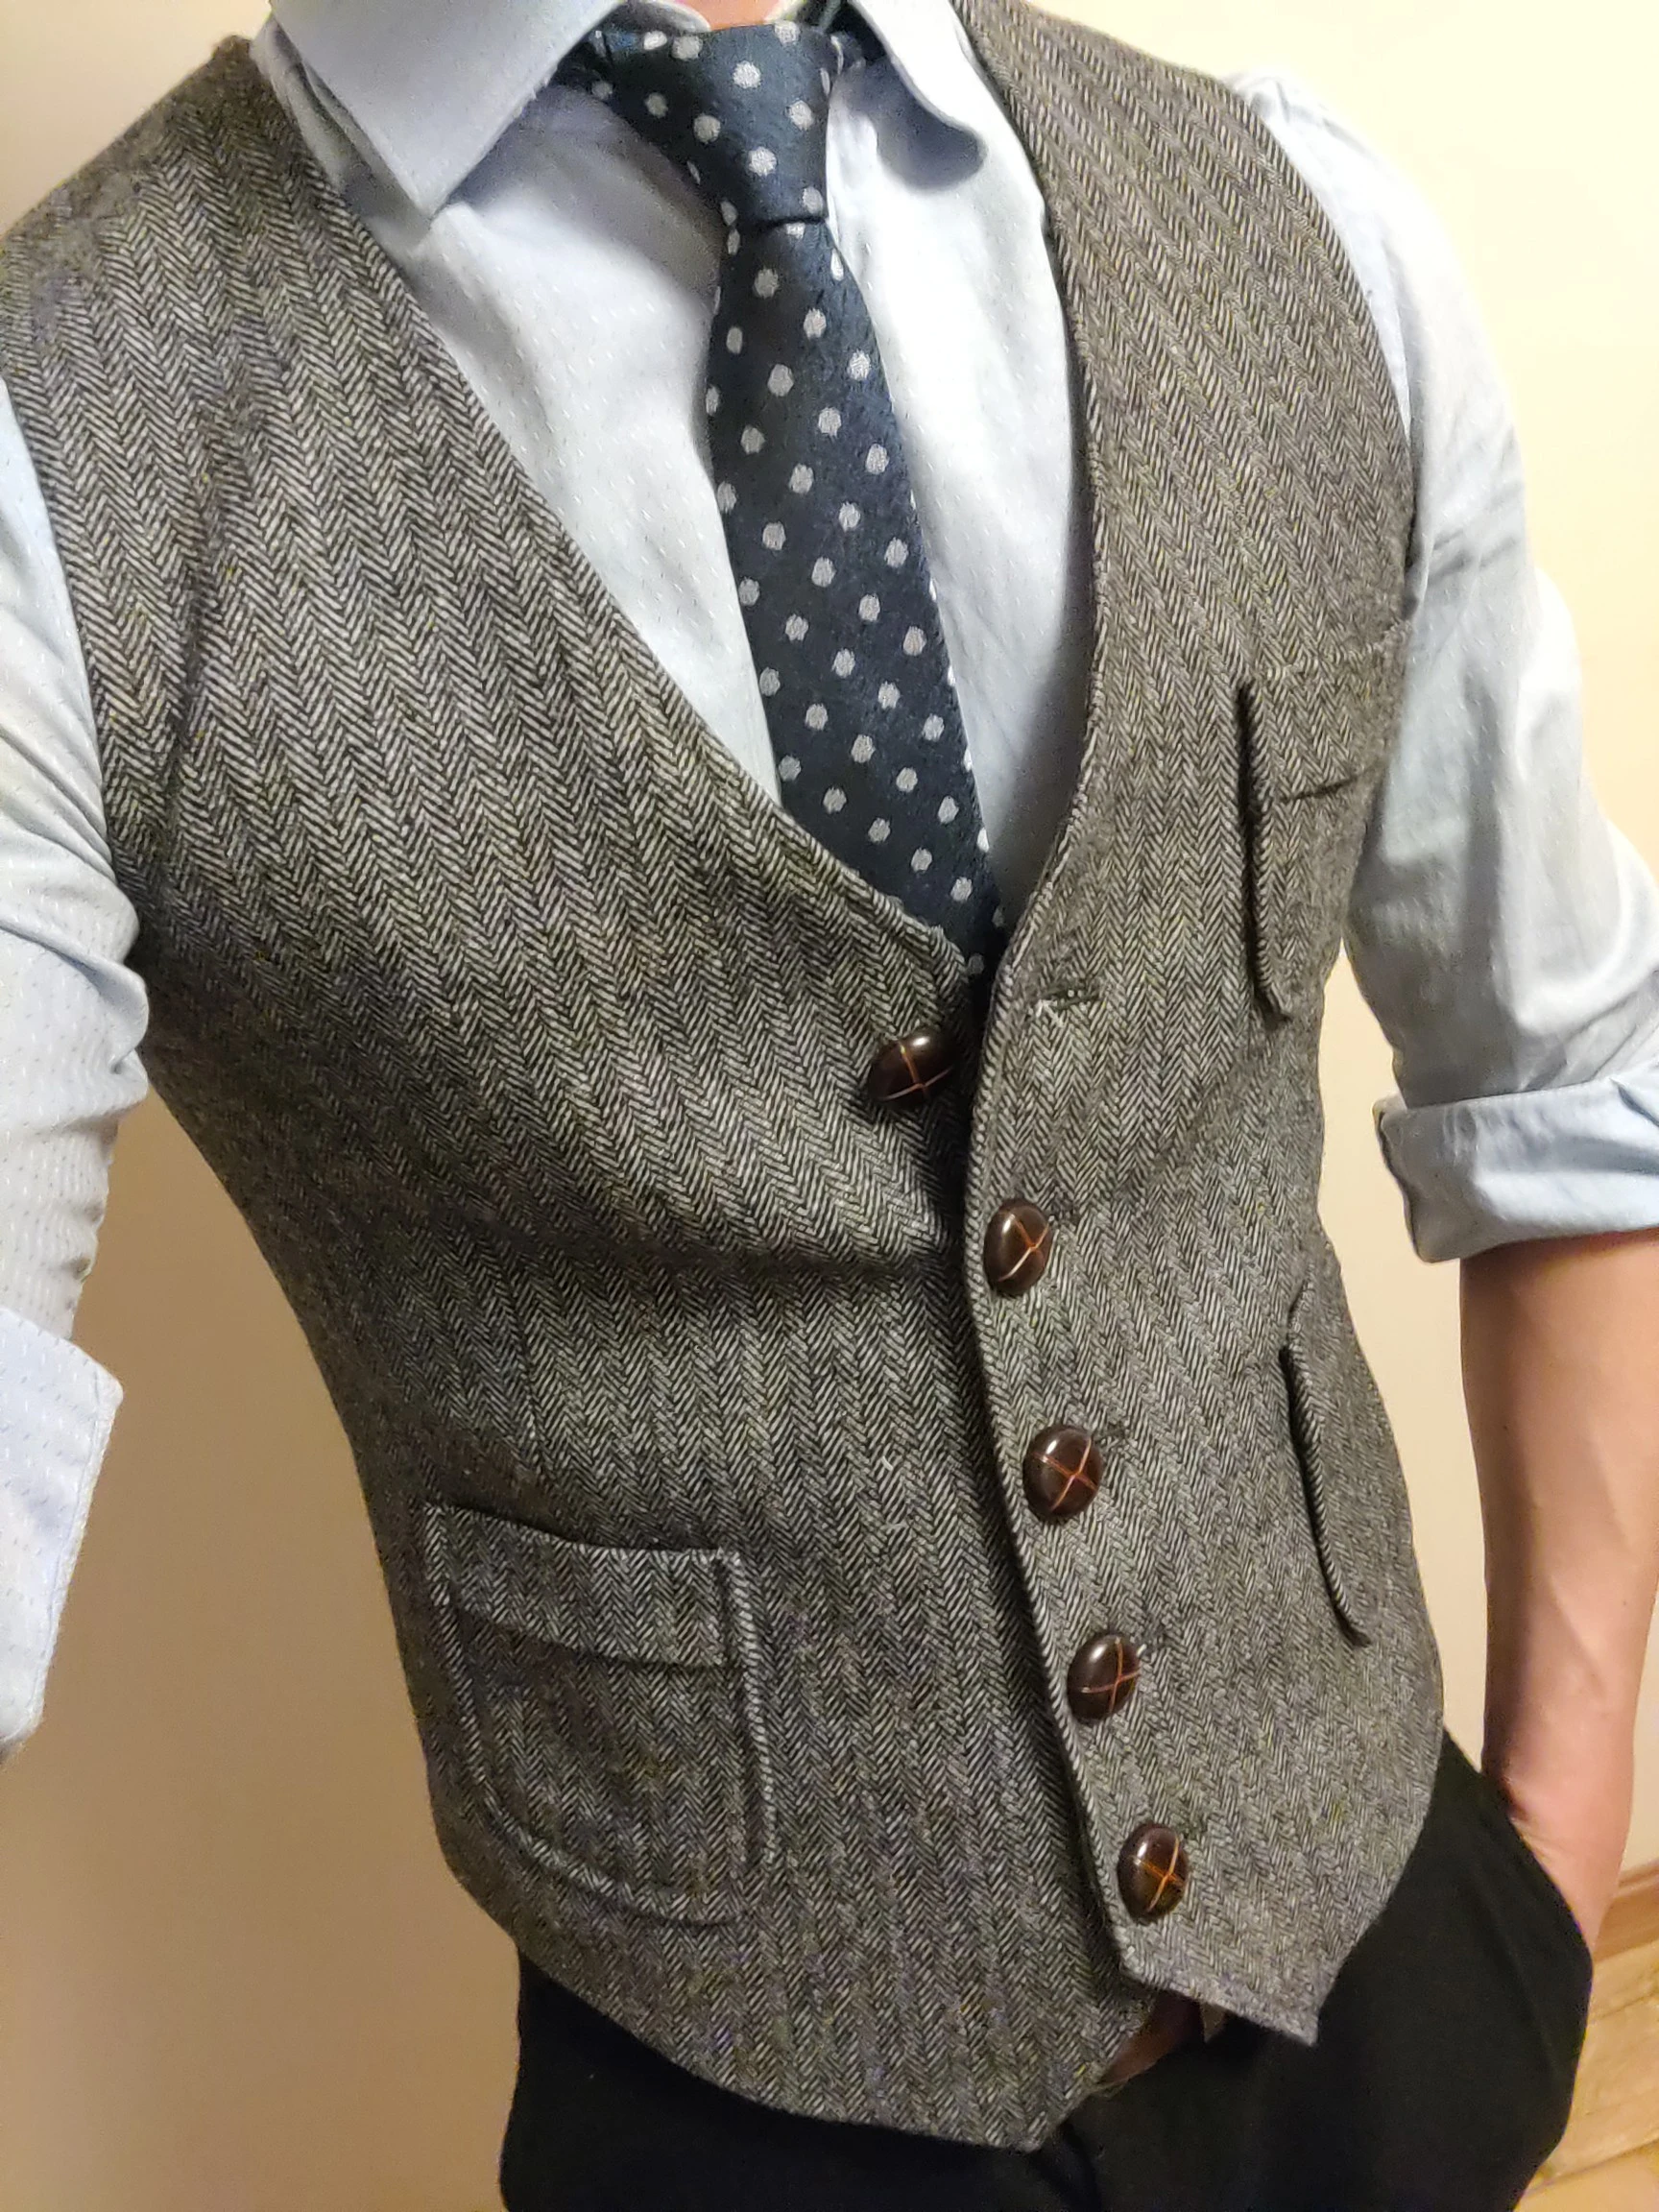 Men's Formal Suit Vest V-Neck Tweed Herringbone Waistcoat Business Dress Suit Vests for Wedding